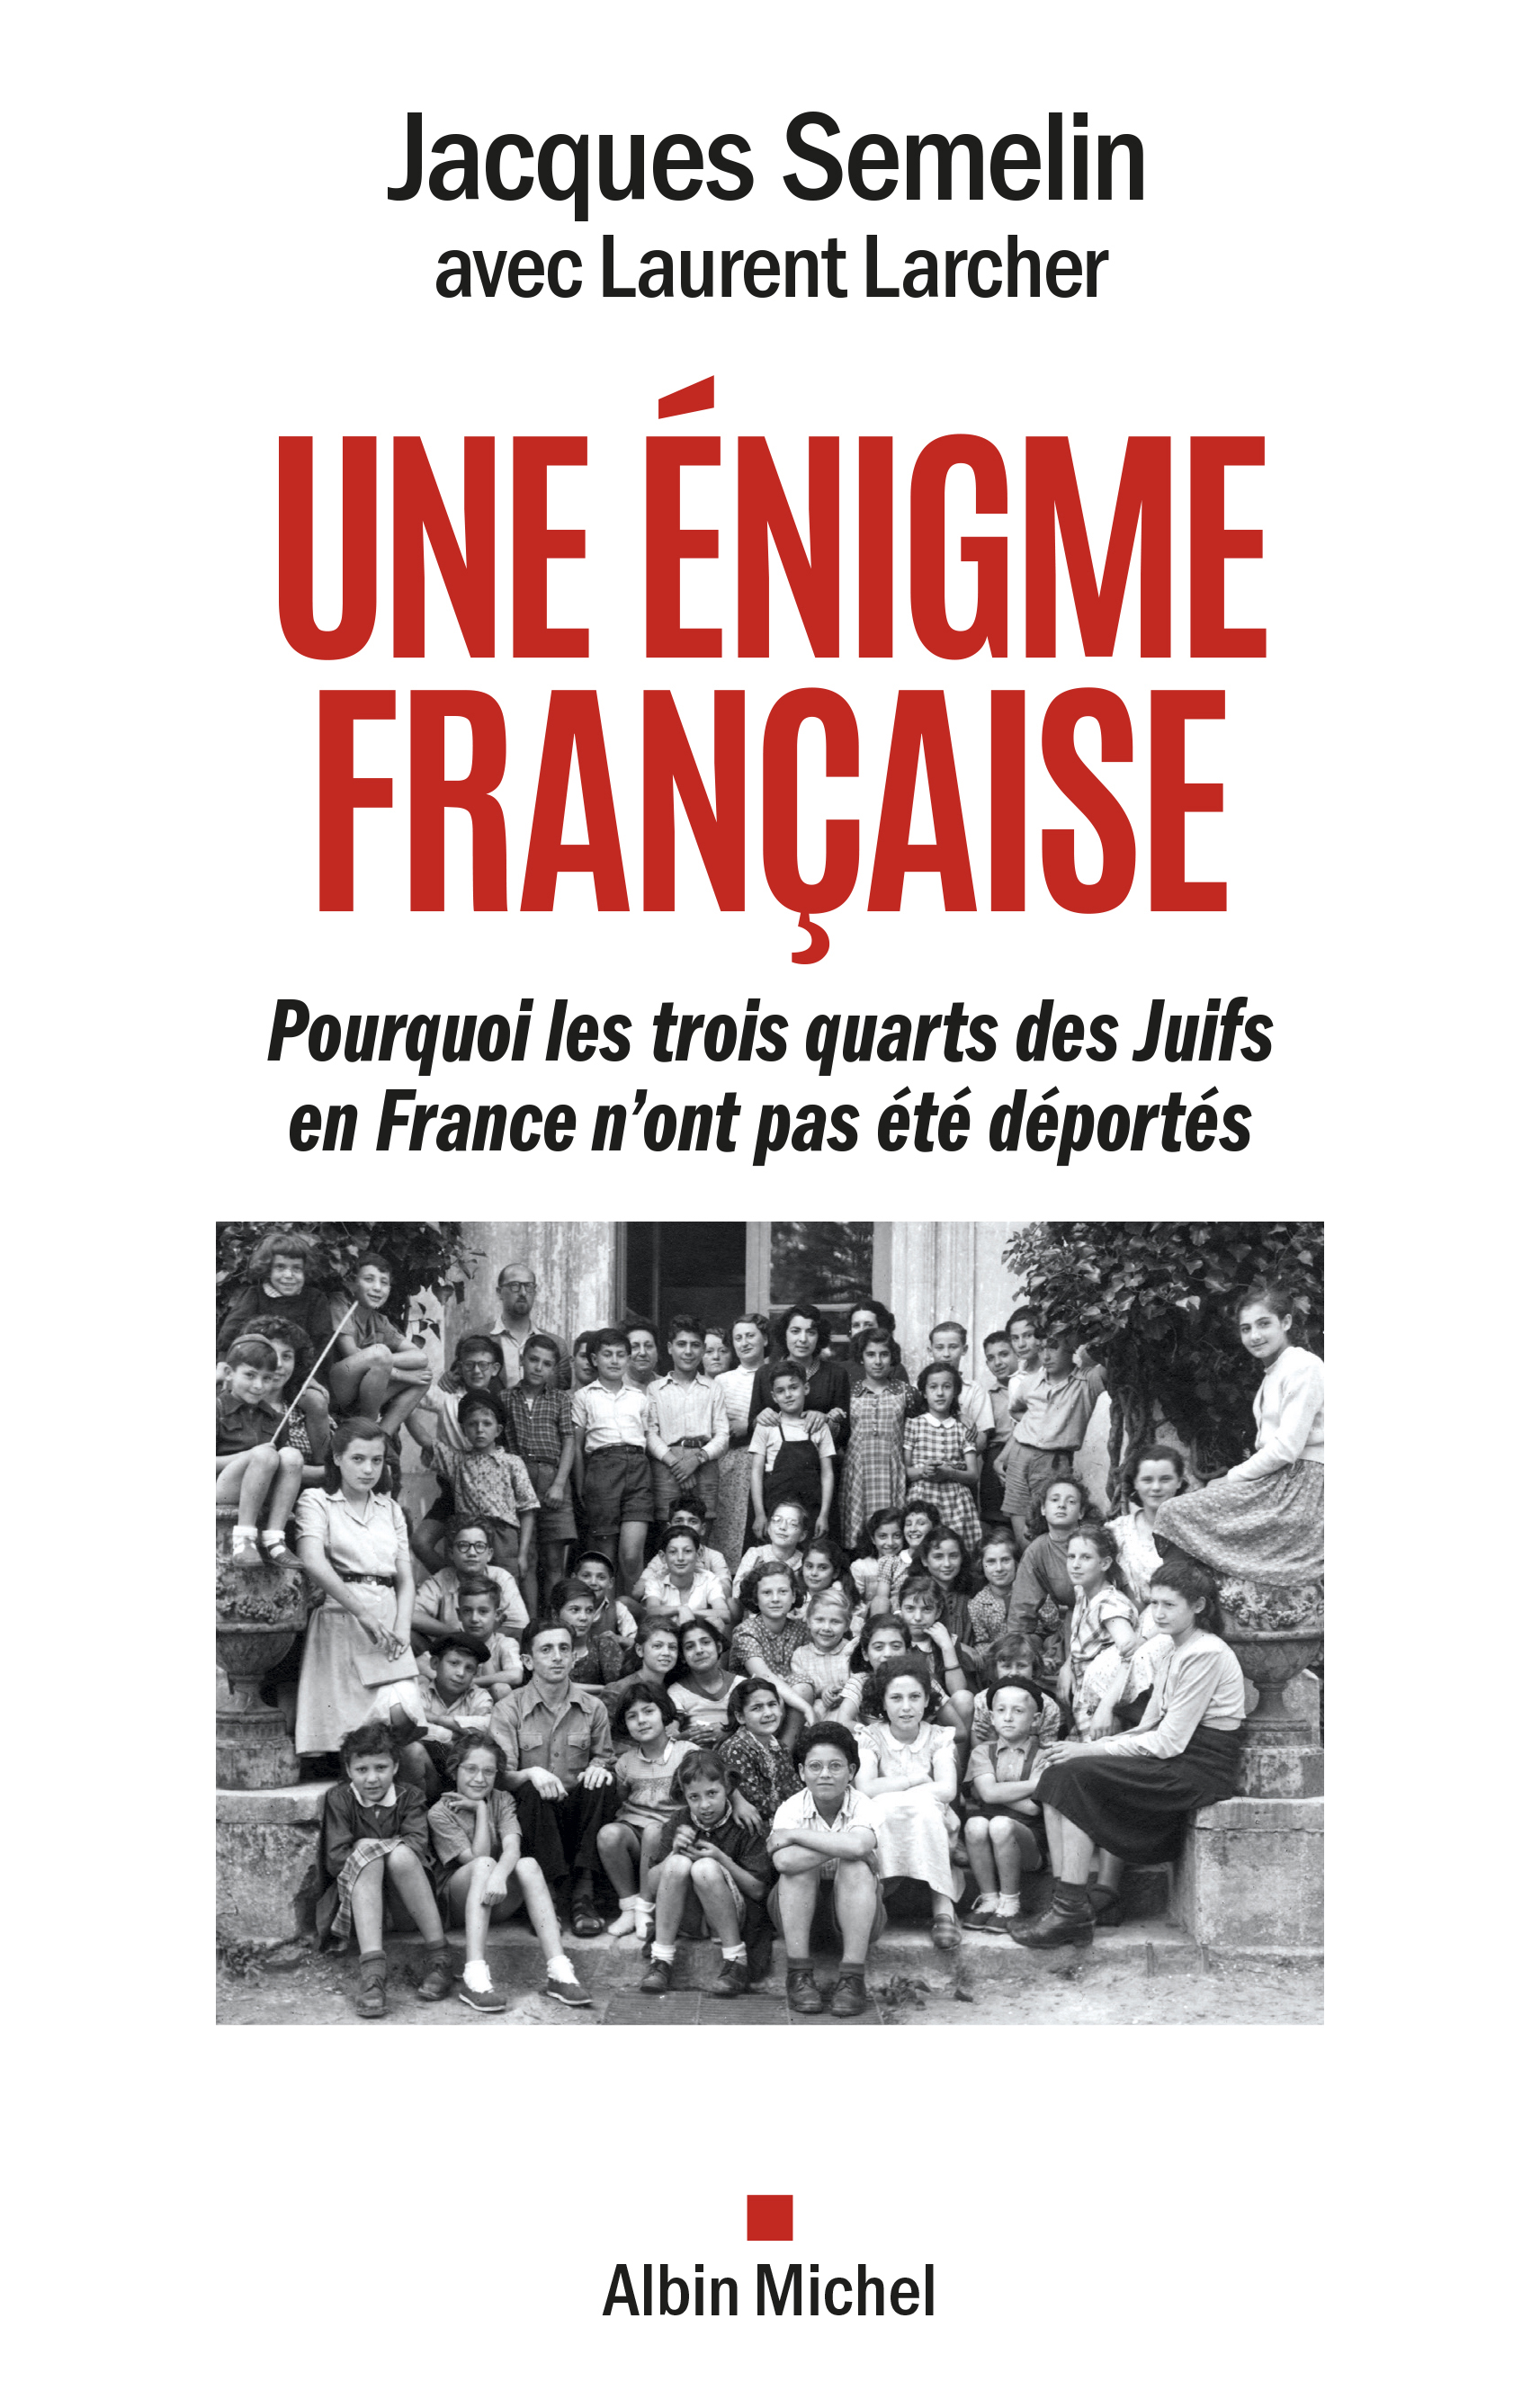 Couverture du livre Une énigme française